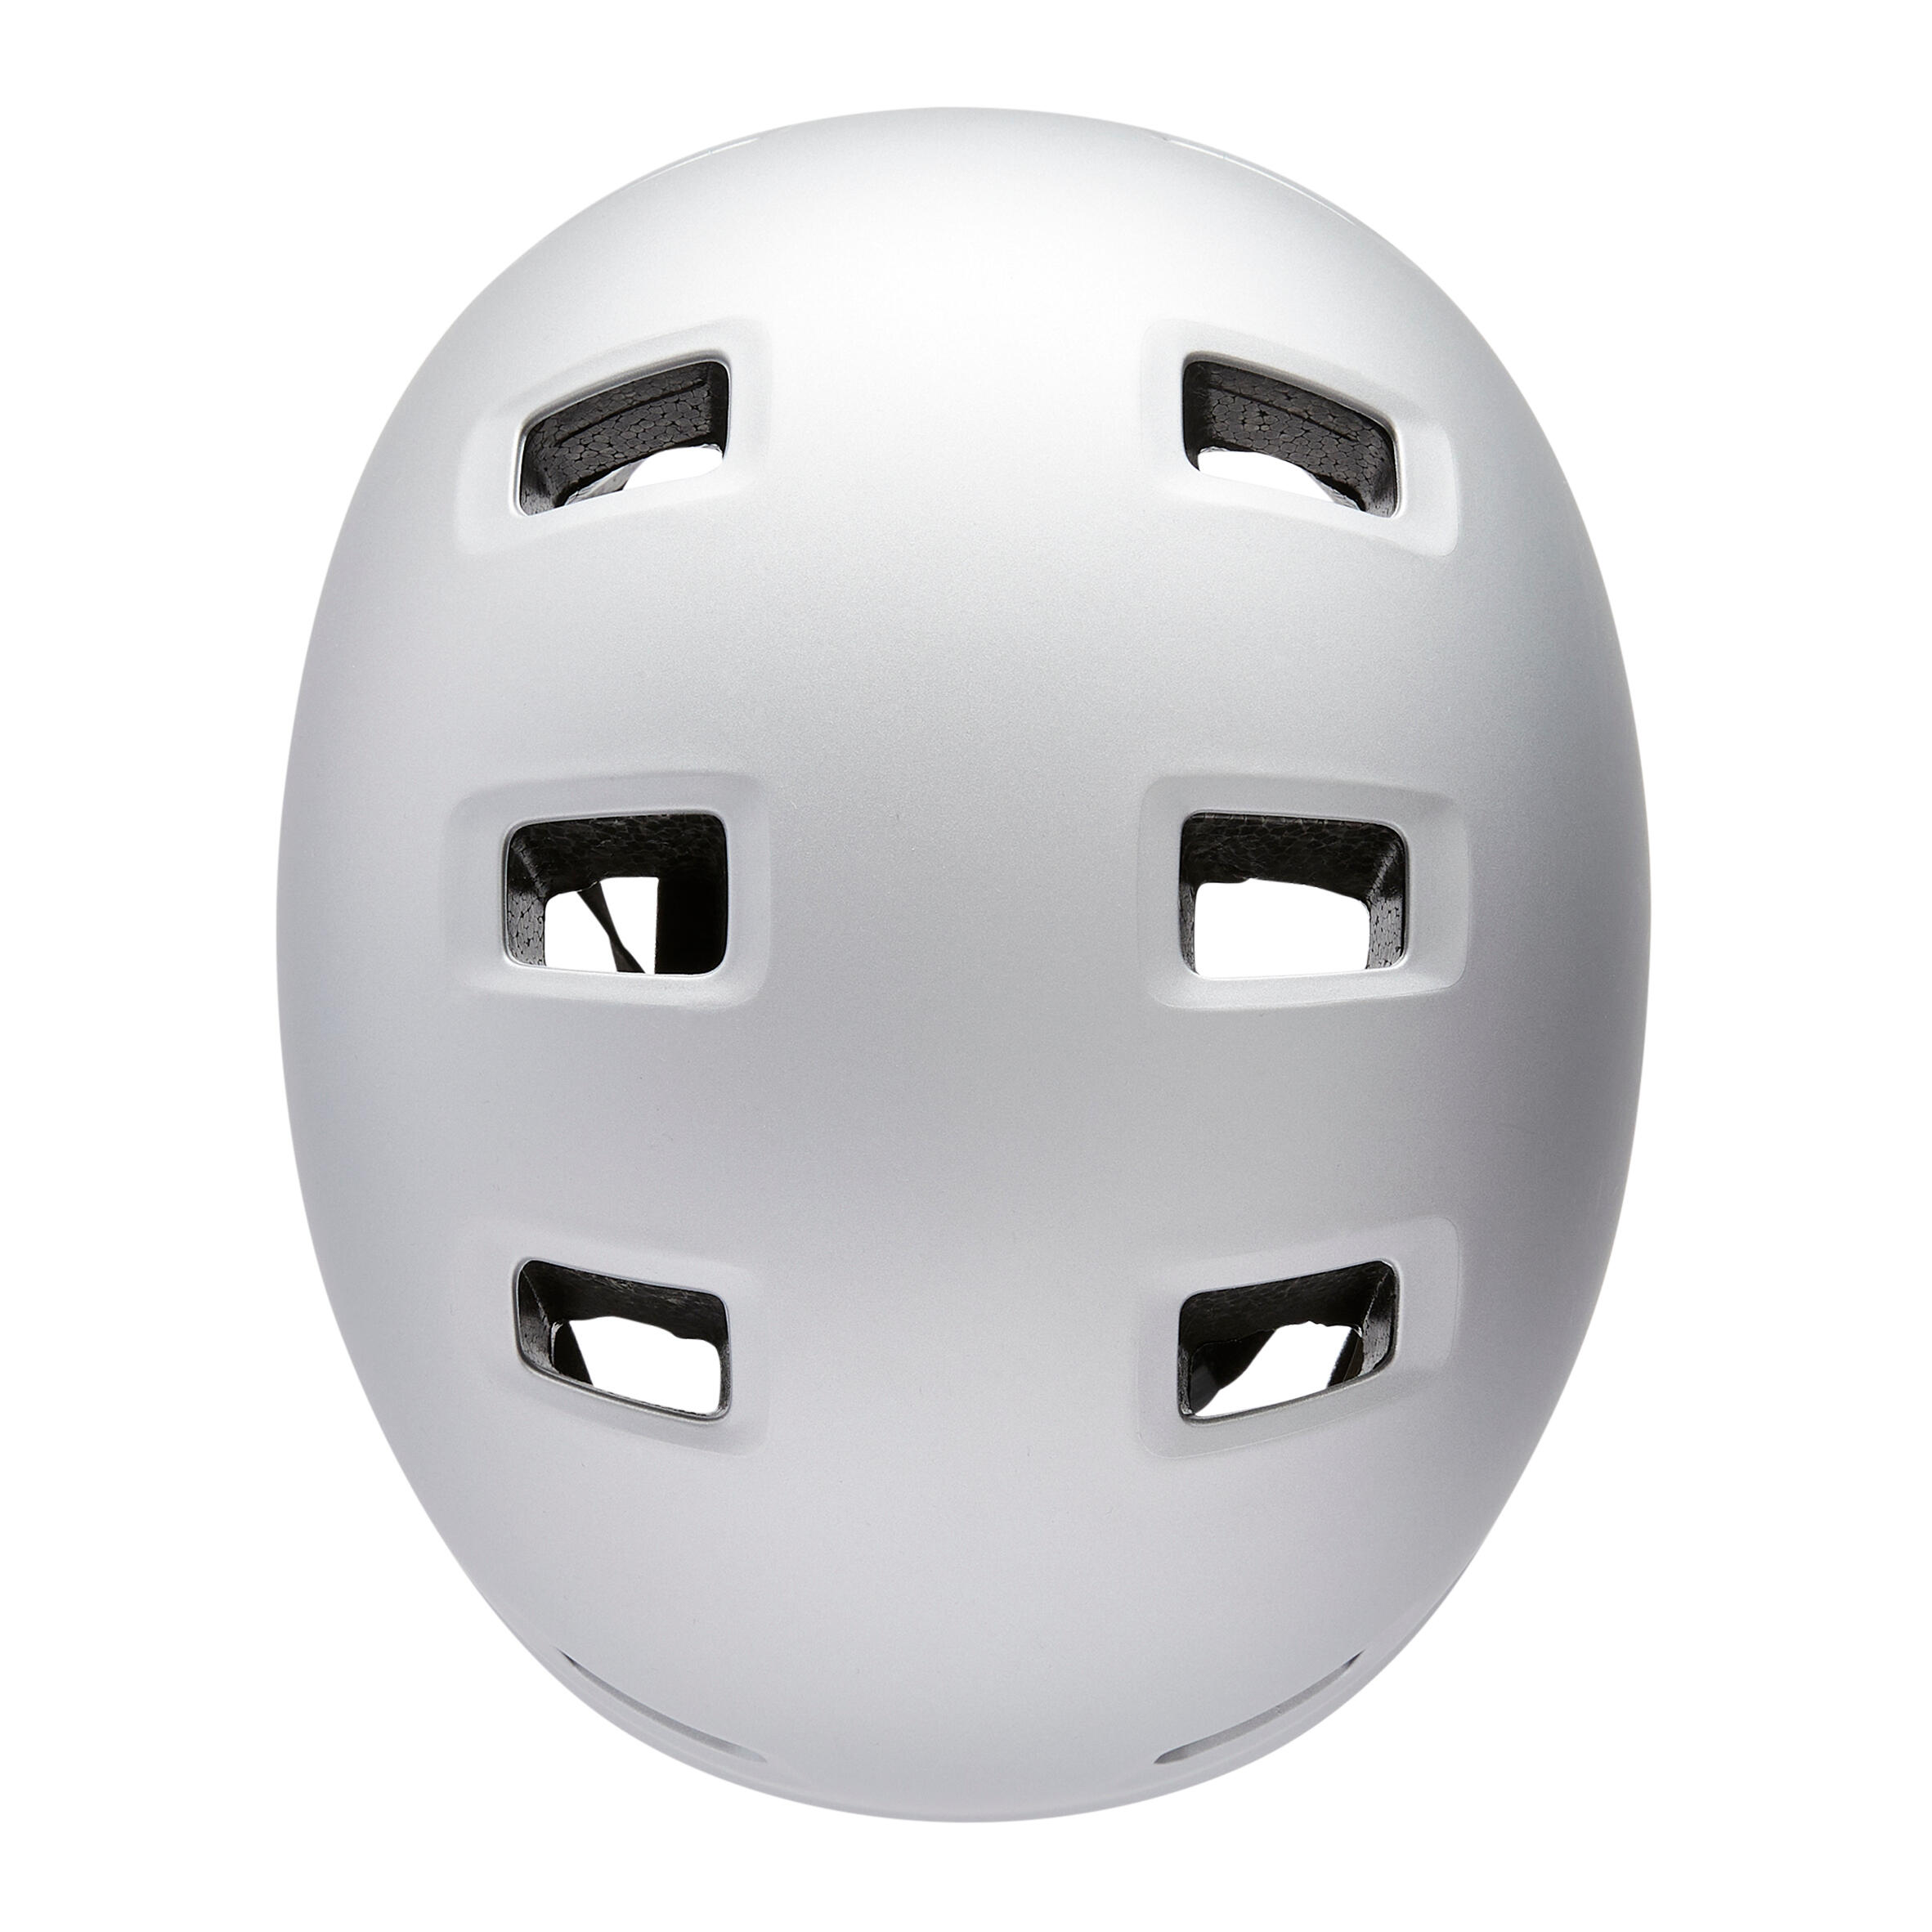 Adjustable Skate Helmet - MF 500 Grey - OXELO